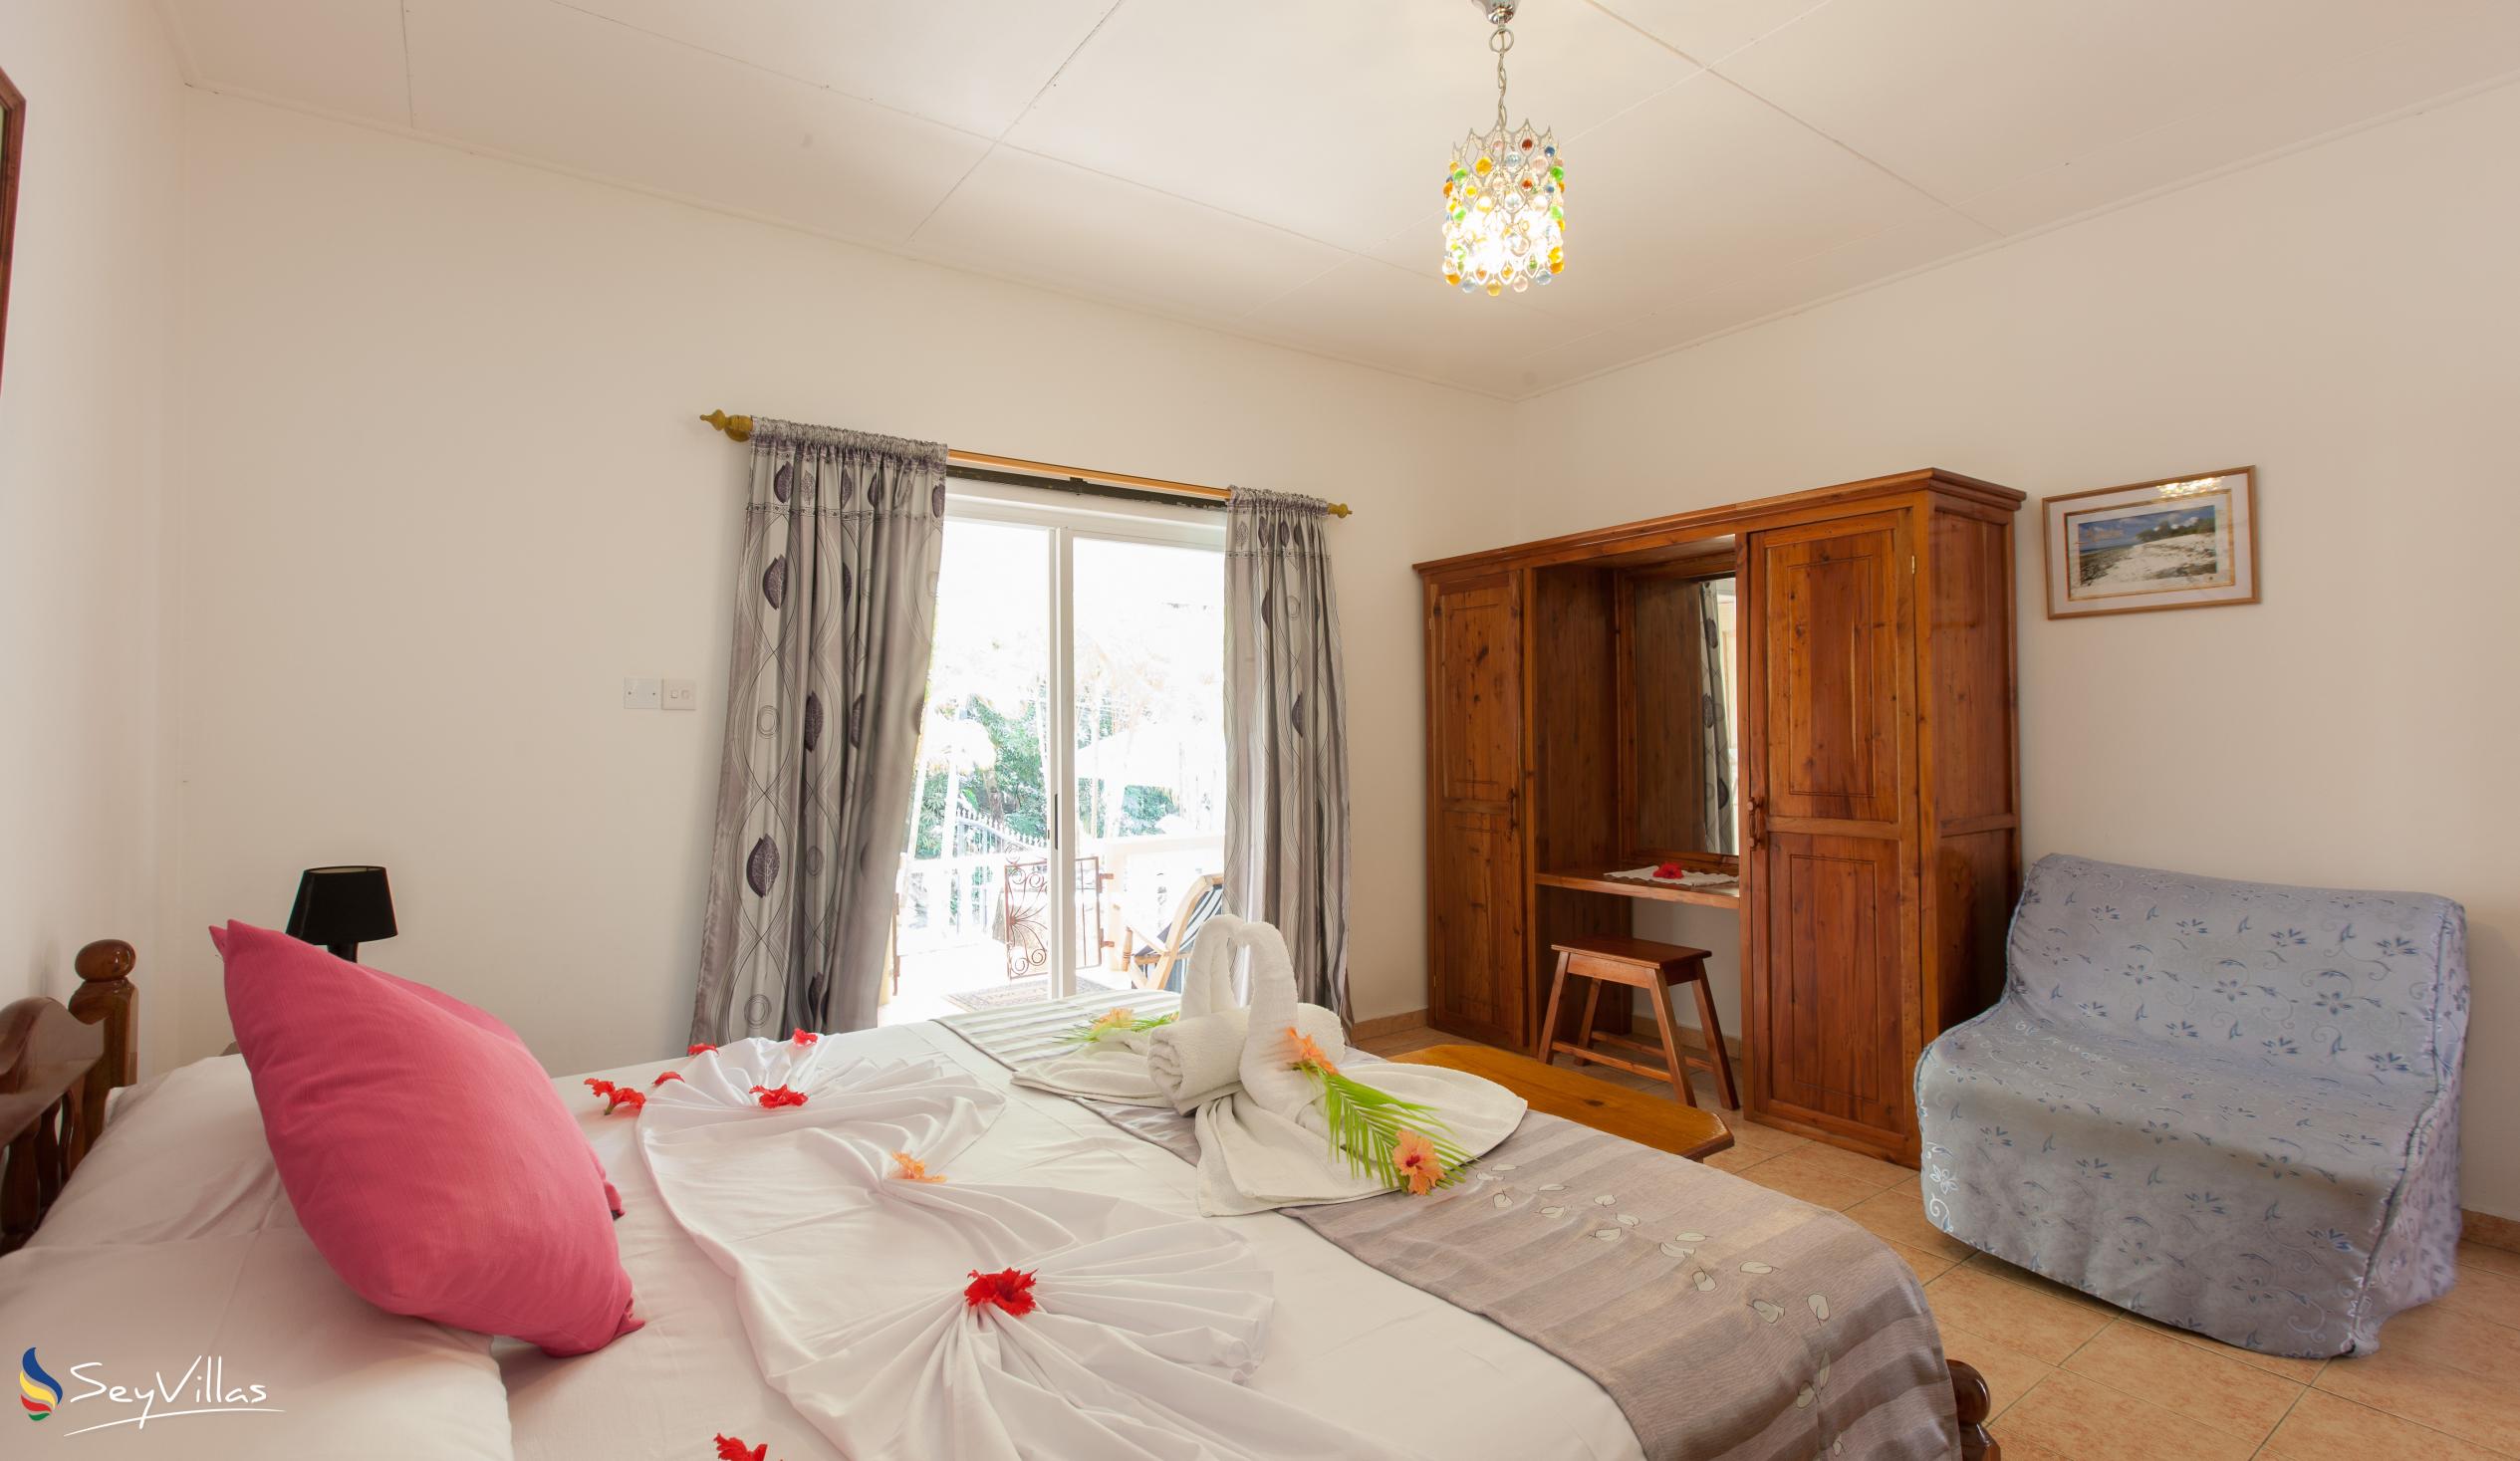 Foto 61: Acquario Villa - Appartement mit 1 Schlafzimmer - Praslin (Seychellen)